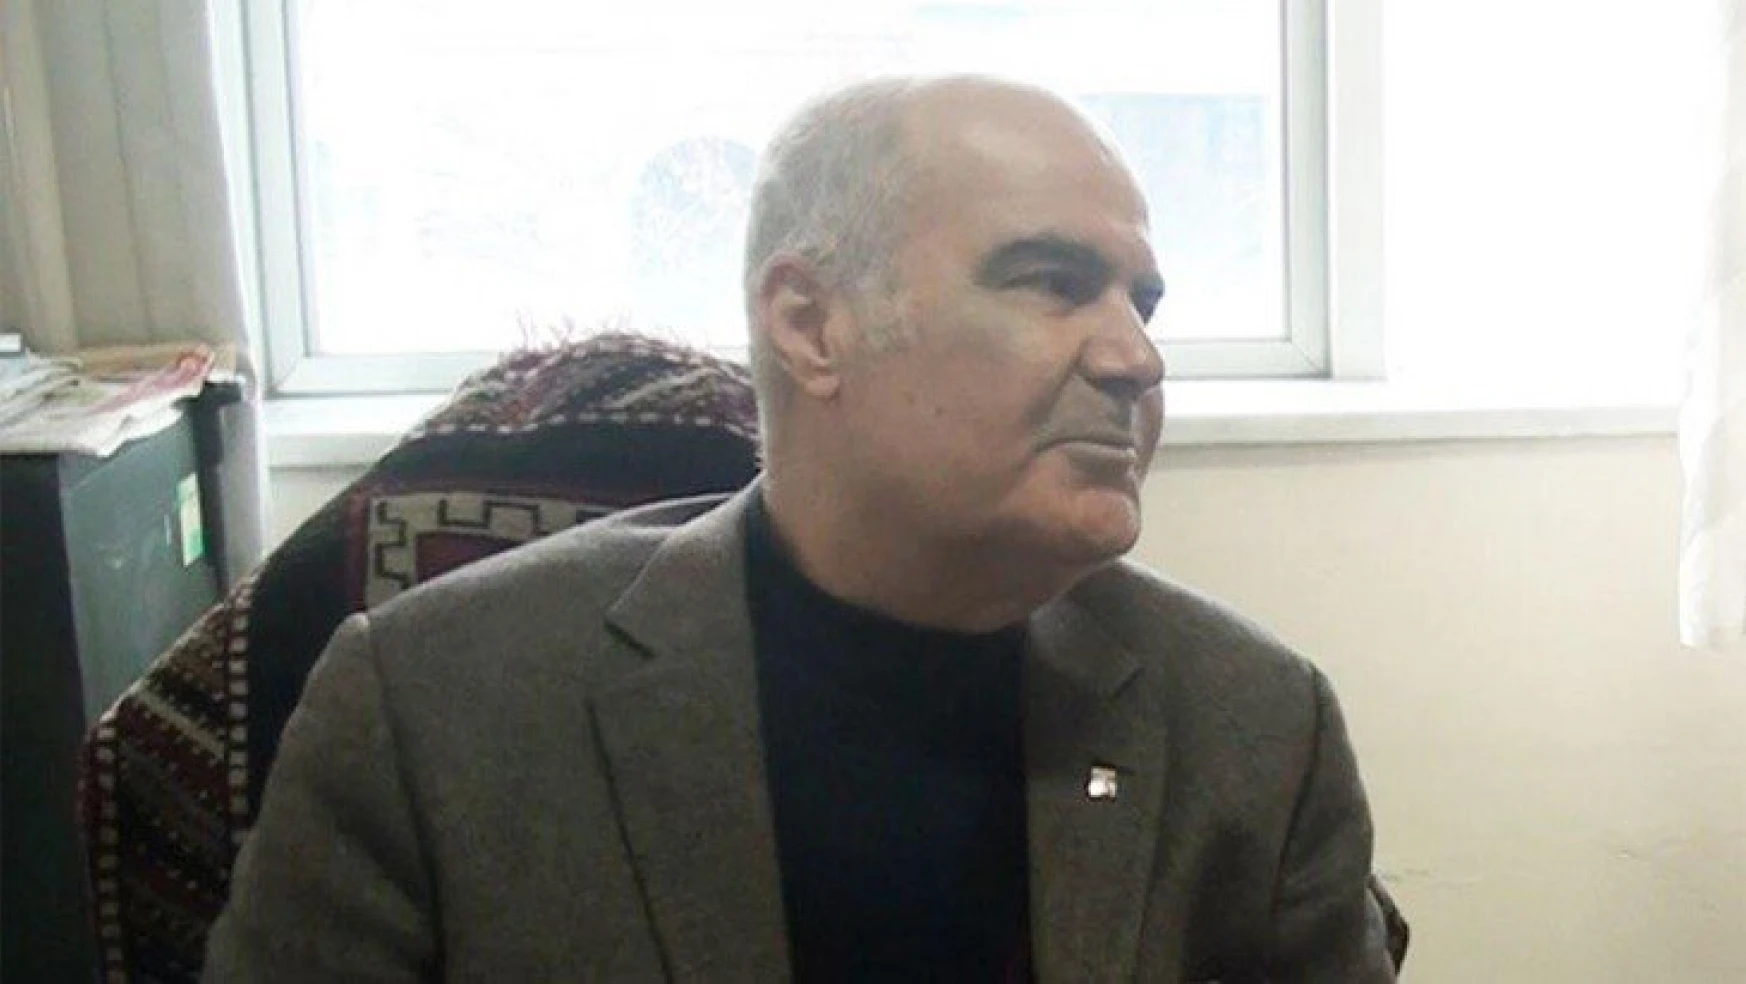 Malatya eski belediye başkanı Semercioğlu koronadan öldü